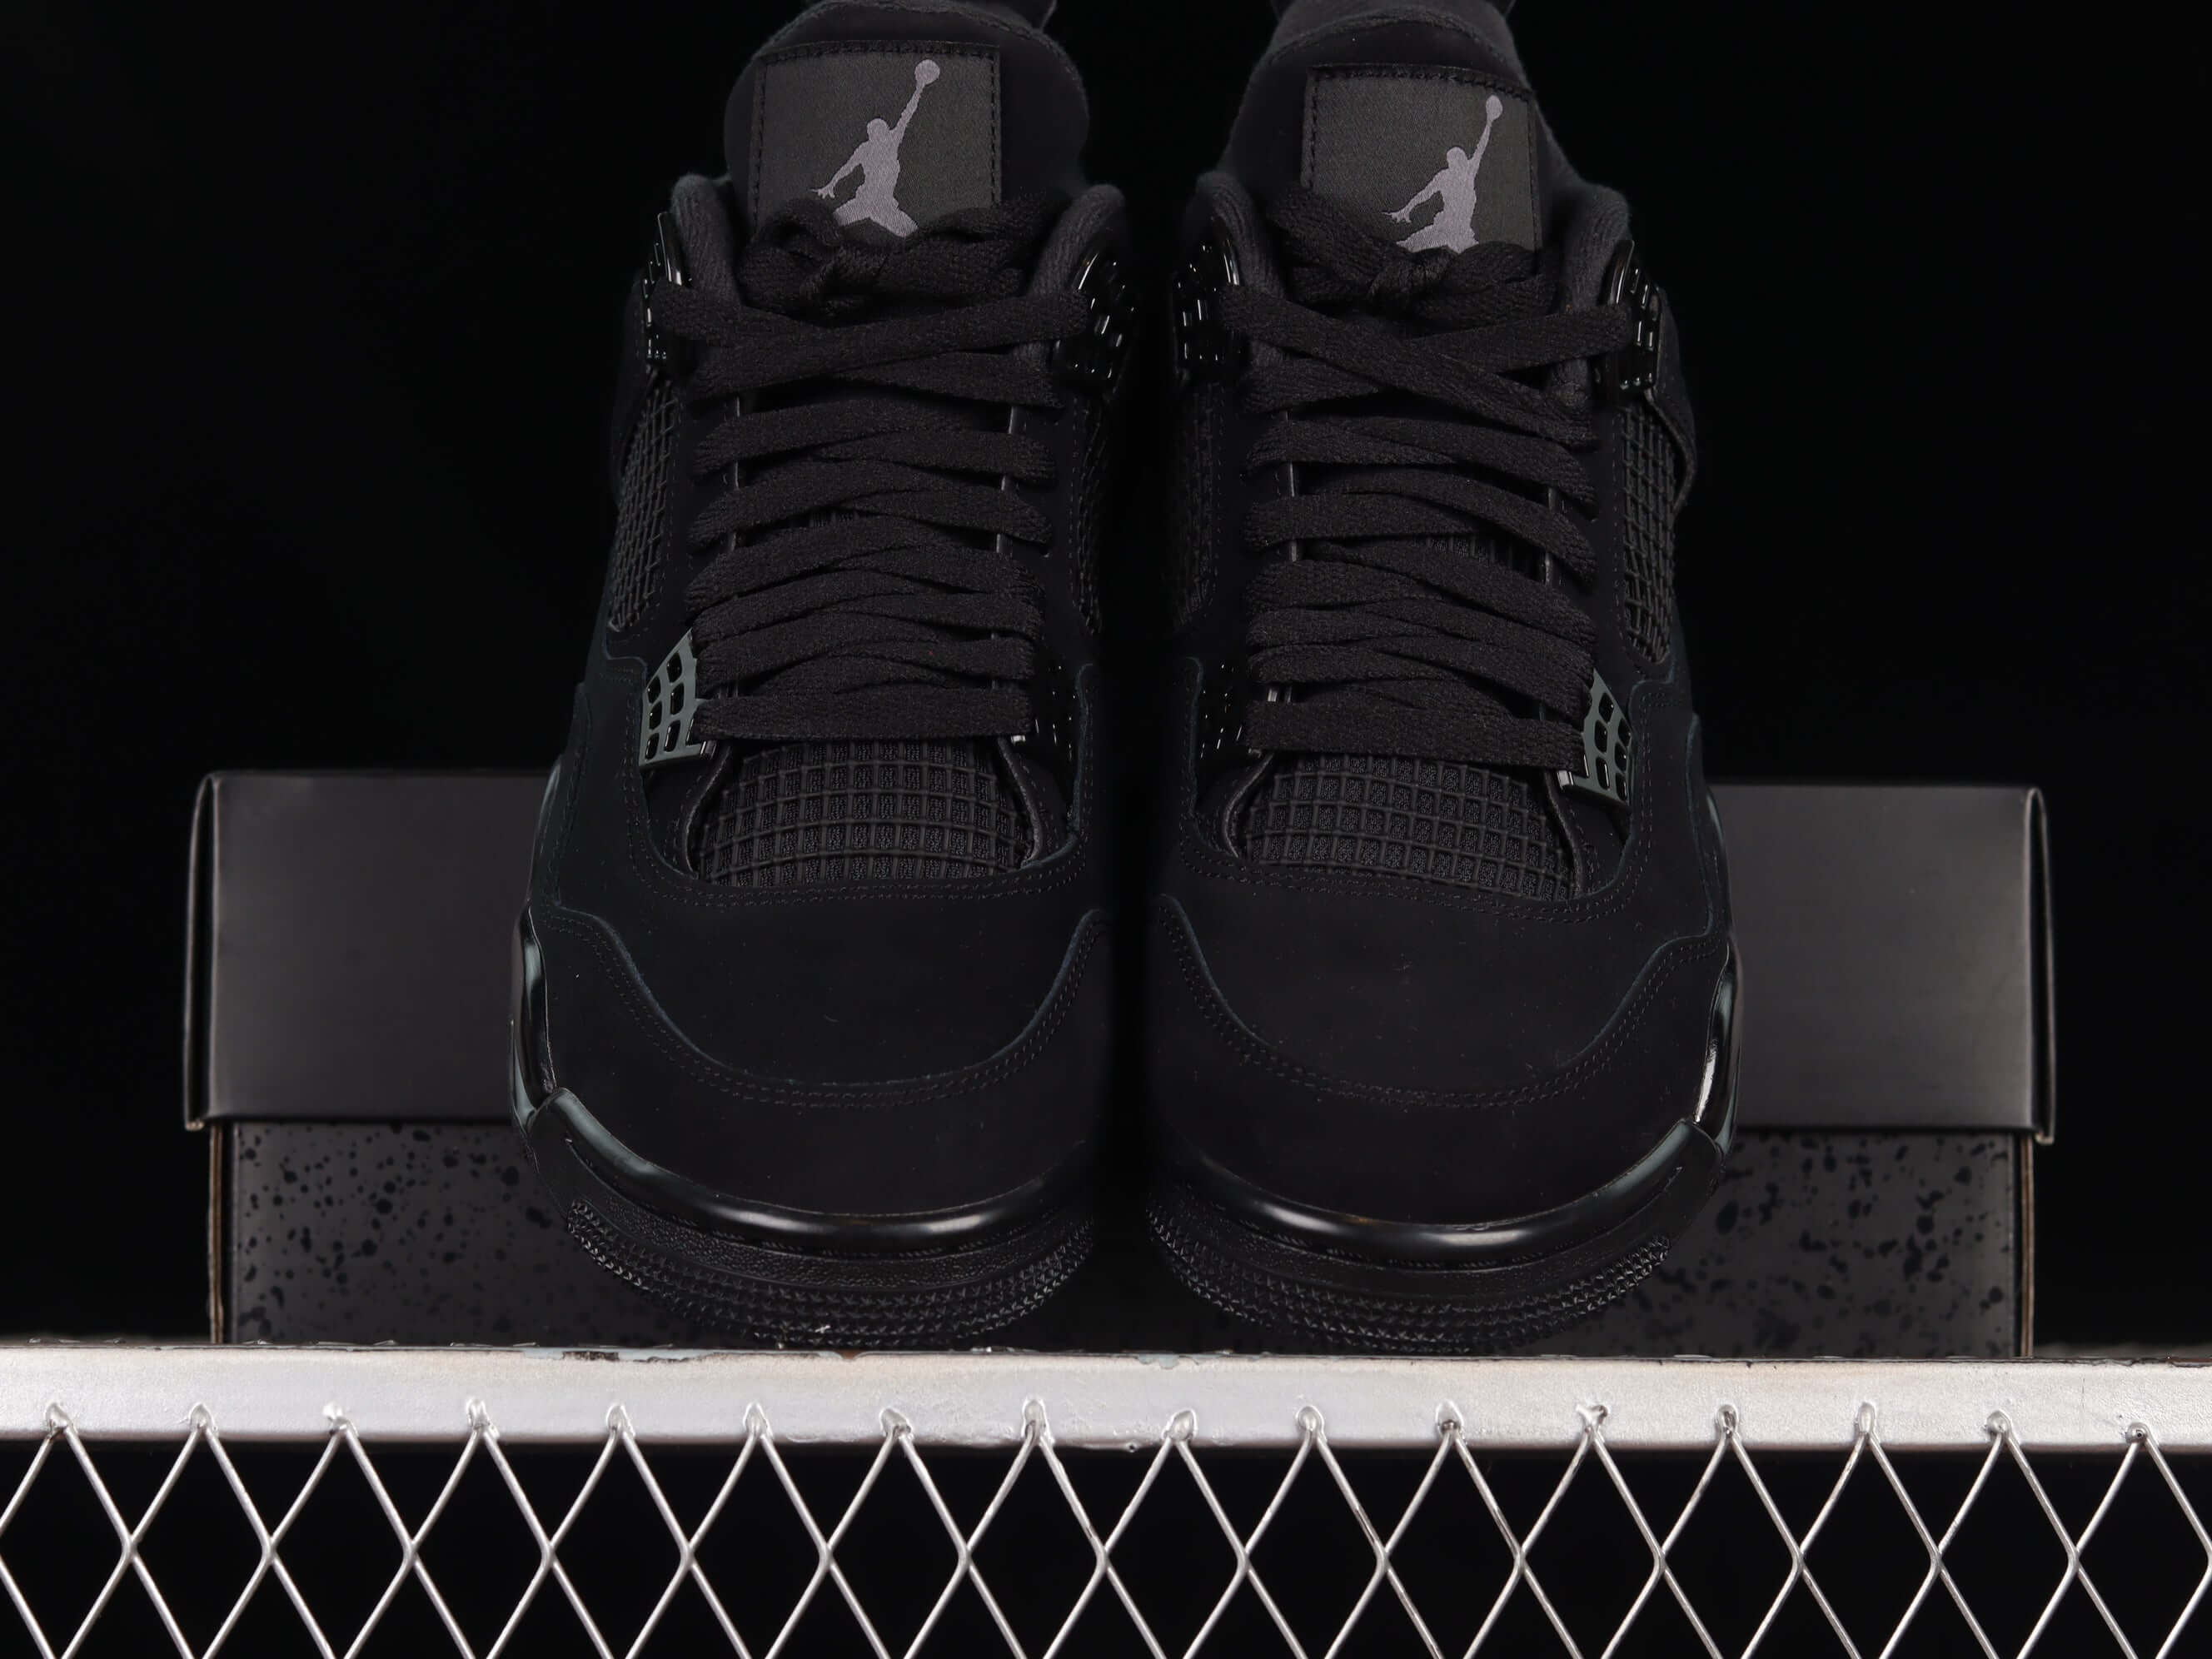  Air Jordan 4 Retro Black Cat 